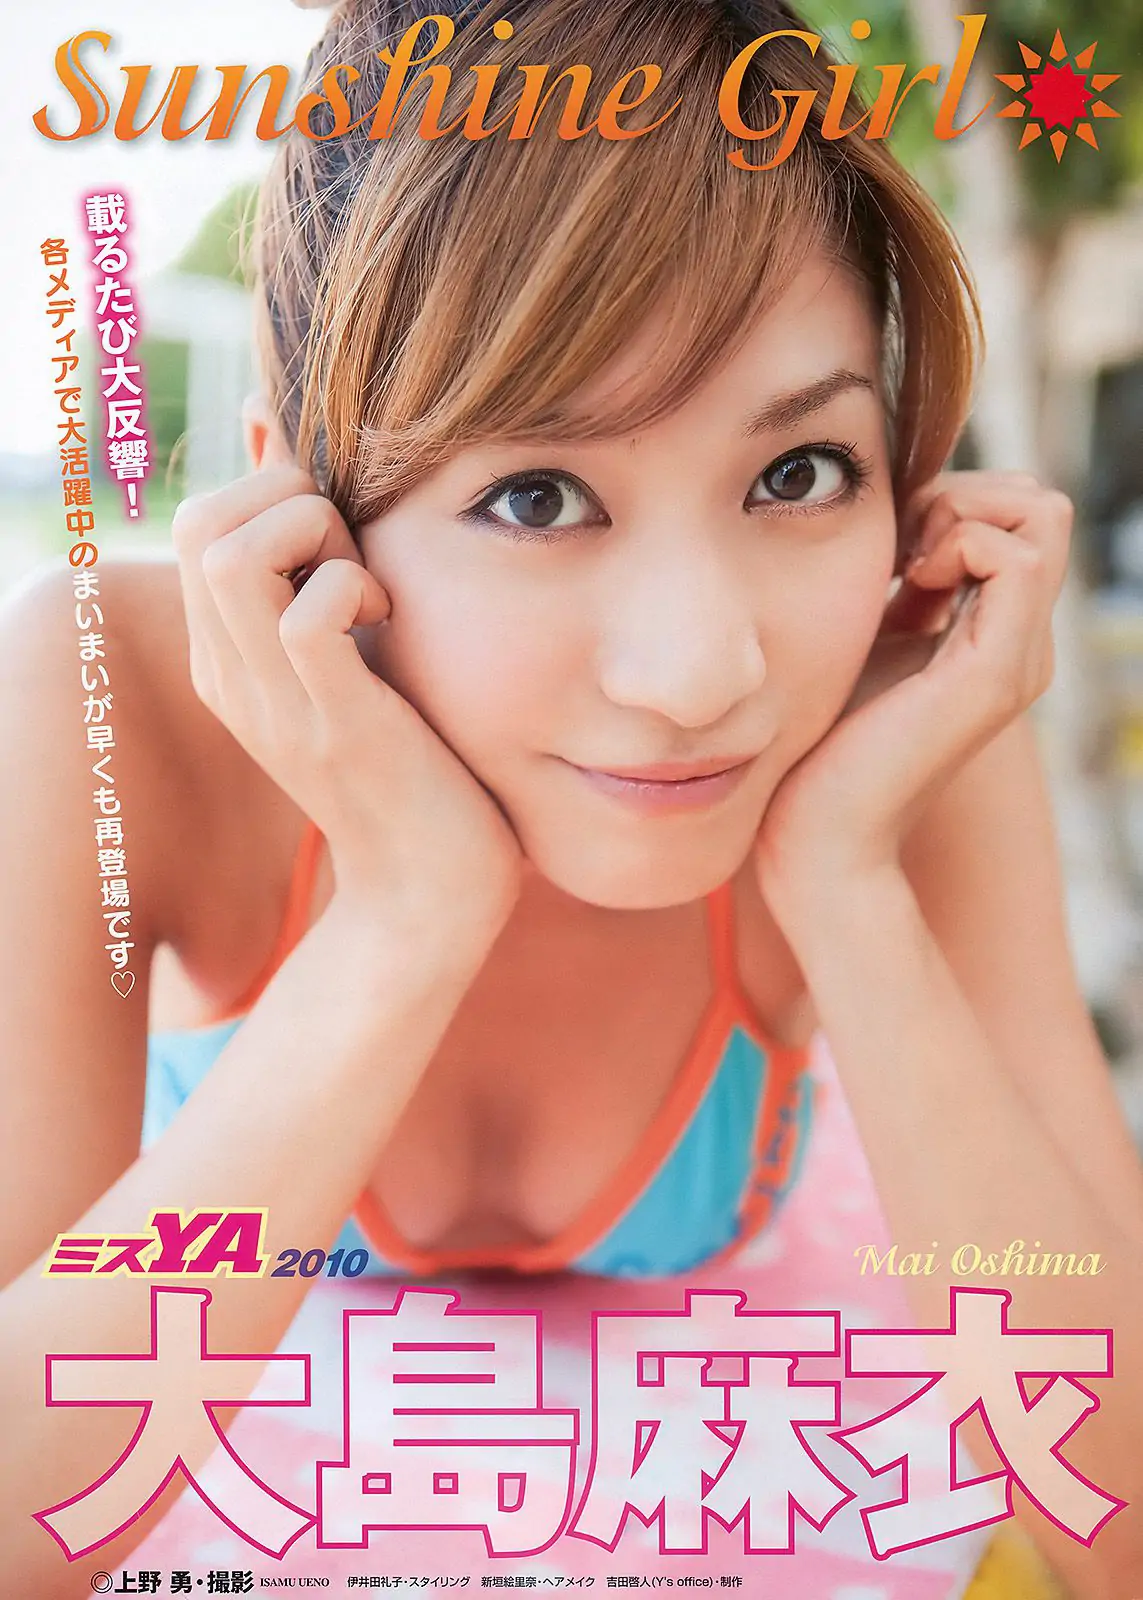 大島麻衣 SKE48 初音みのり Maika 柚木Rio [Young Animal] 2010年No.21 写真杂志